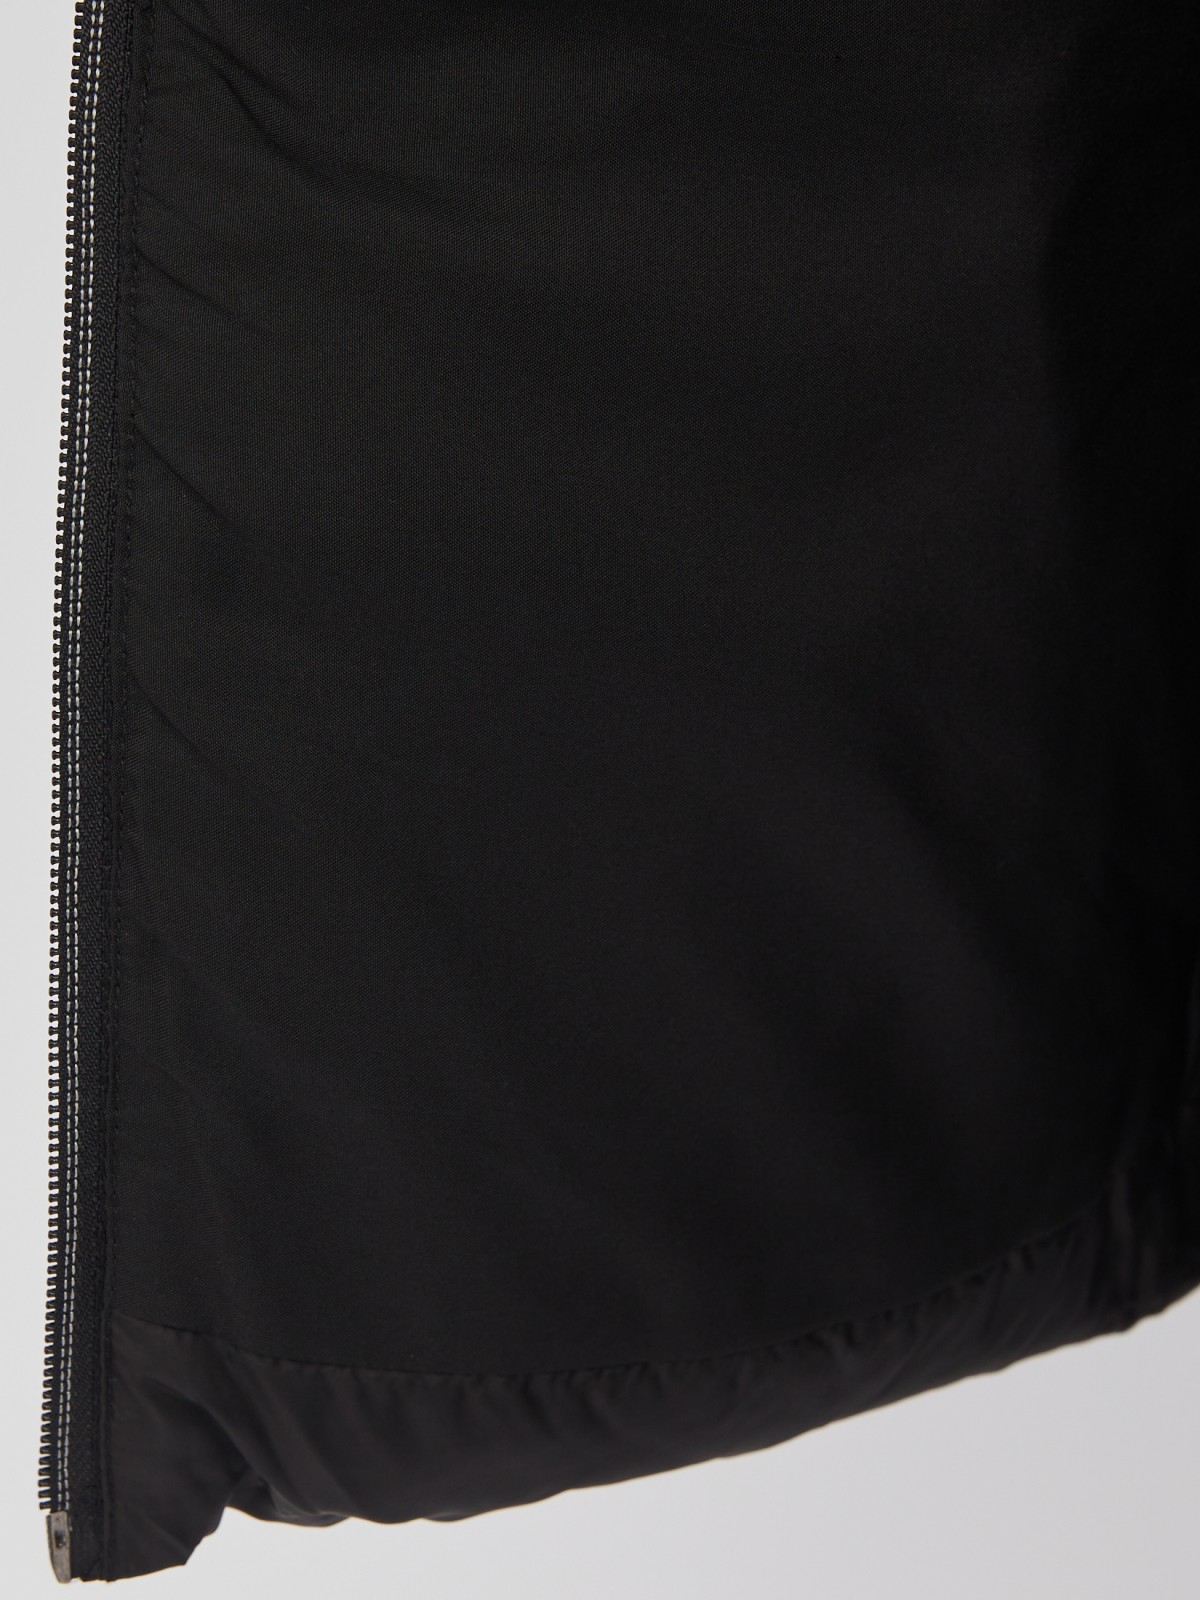 Утеплённая стёганая куртка укороченного фасона с капюшоном zolla 023335112224, цвет черный, размер S - фото 5